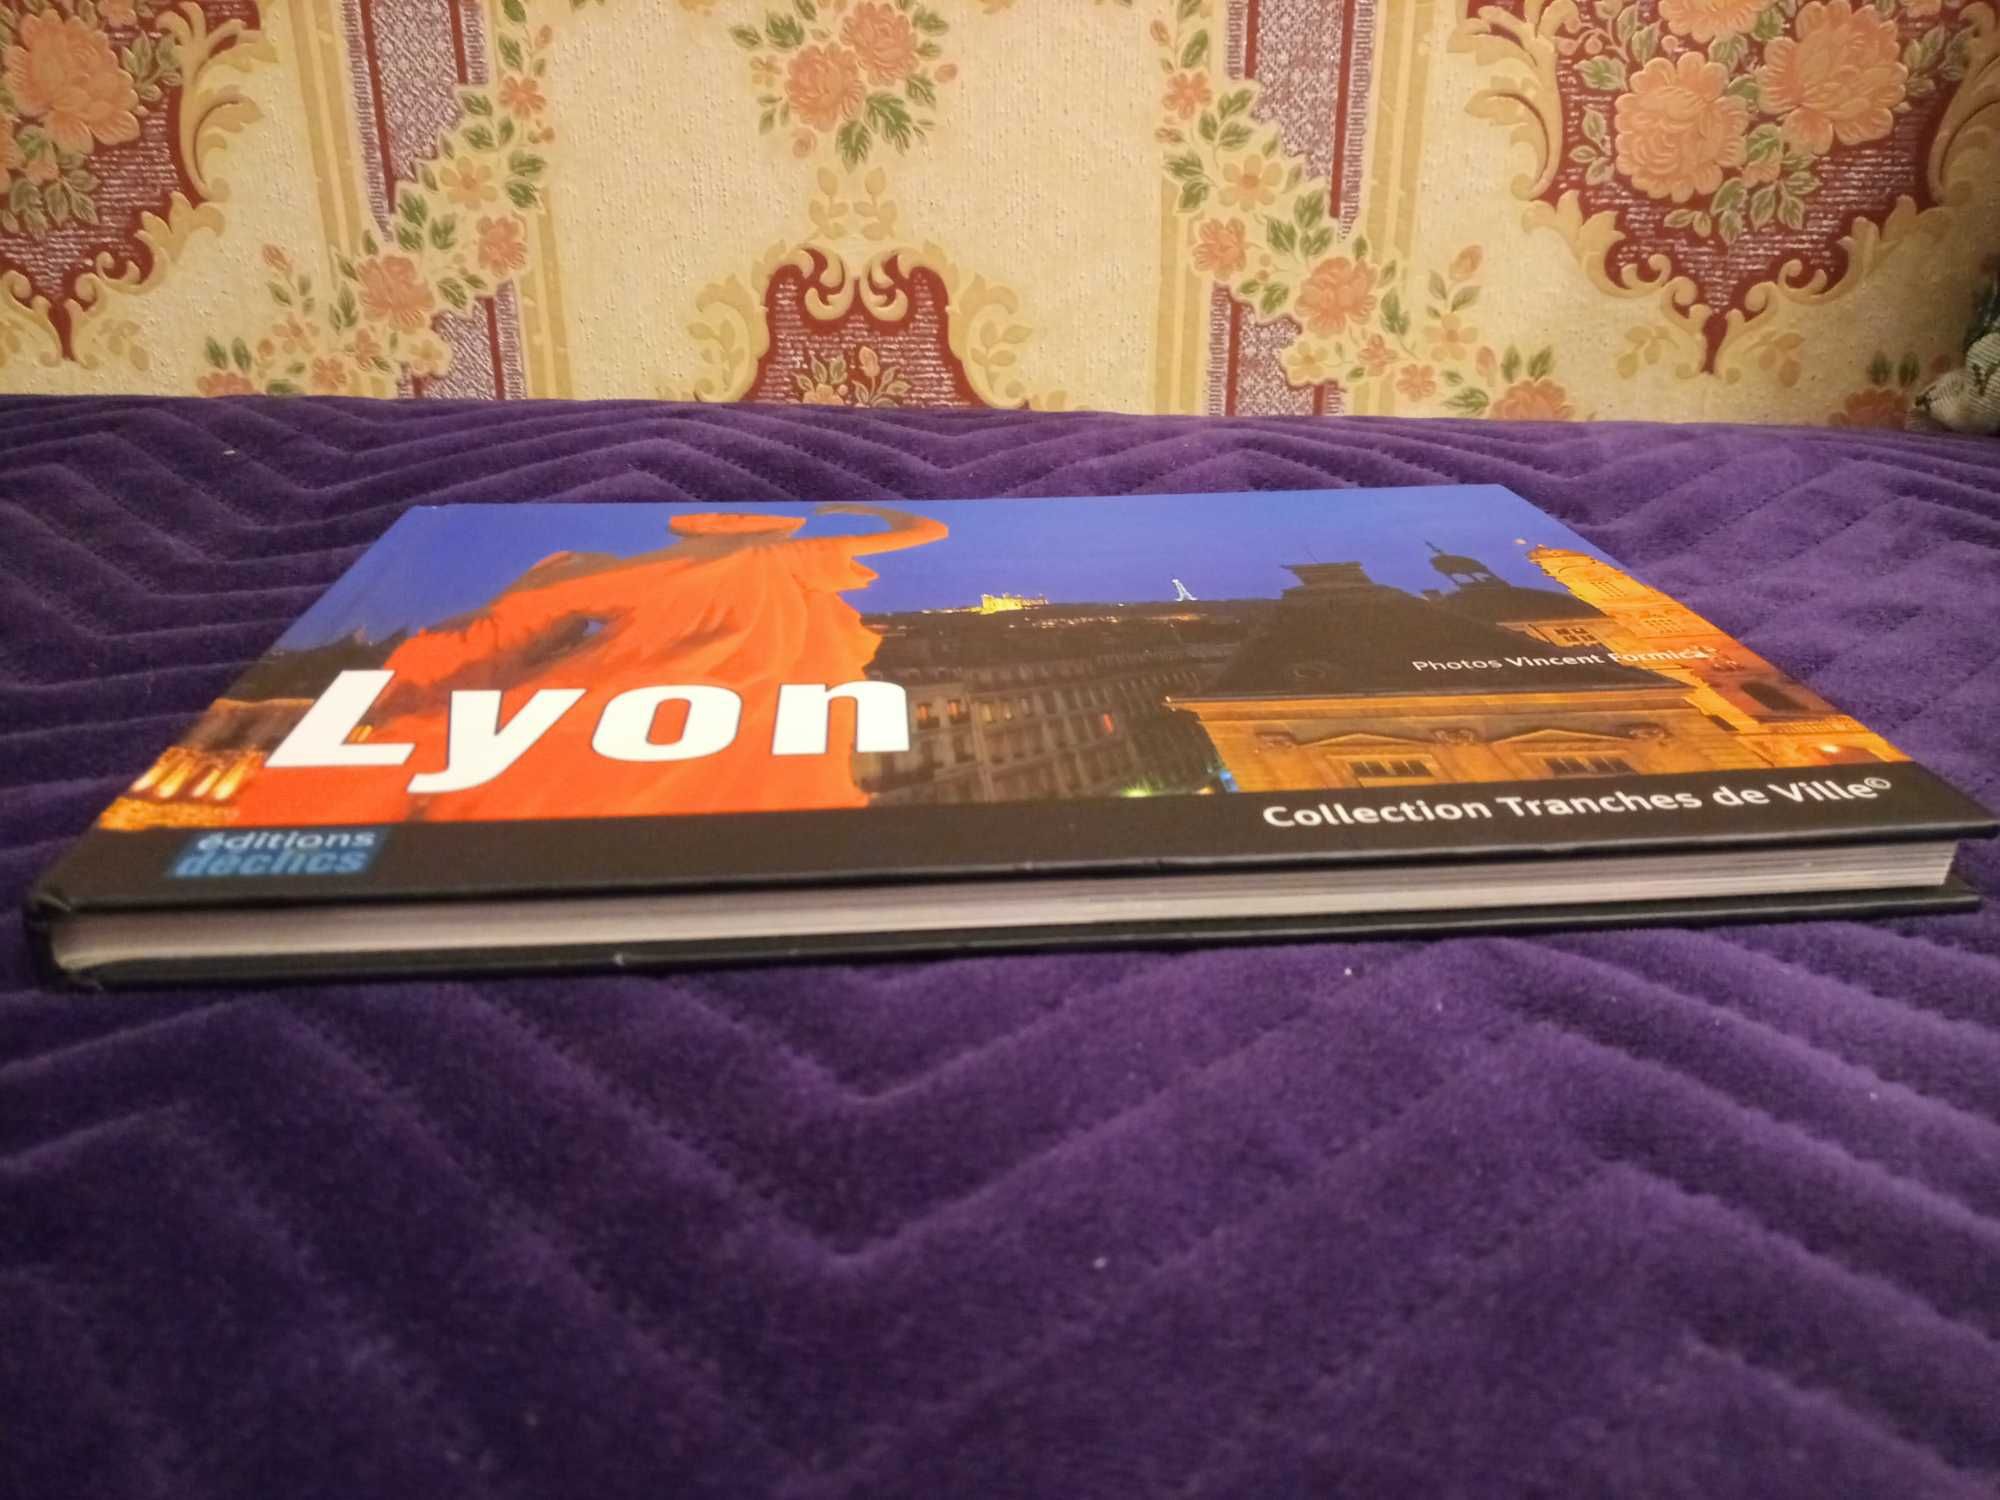 Lyon album po francusku Collection Tranches de Ville